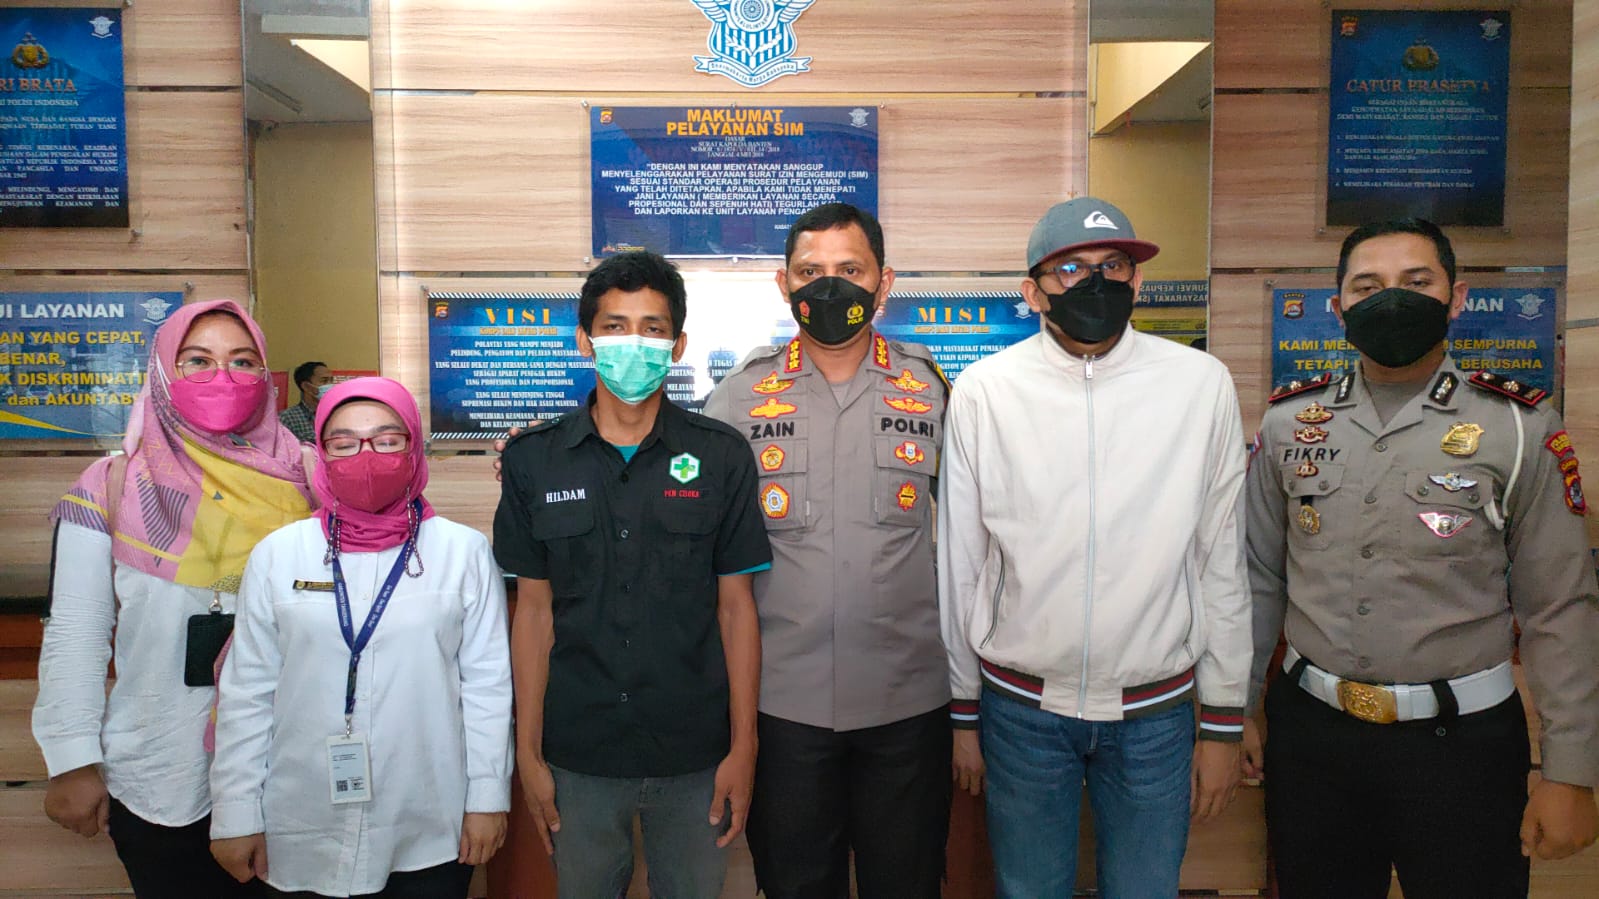 Akhirnya Pengemudi Mercy Minta Maaf, Kasus dengan Ambulans Berakhir Damai di Polresta Tangerang